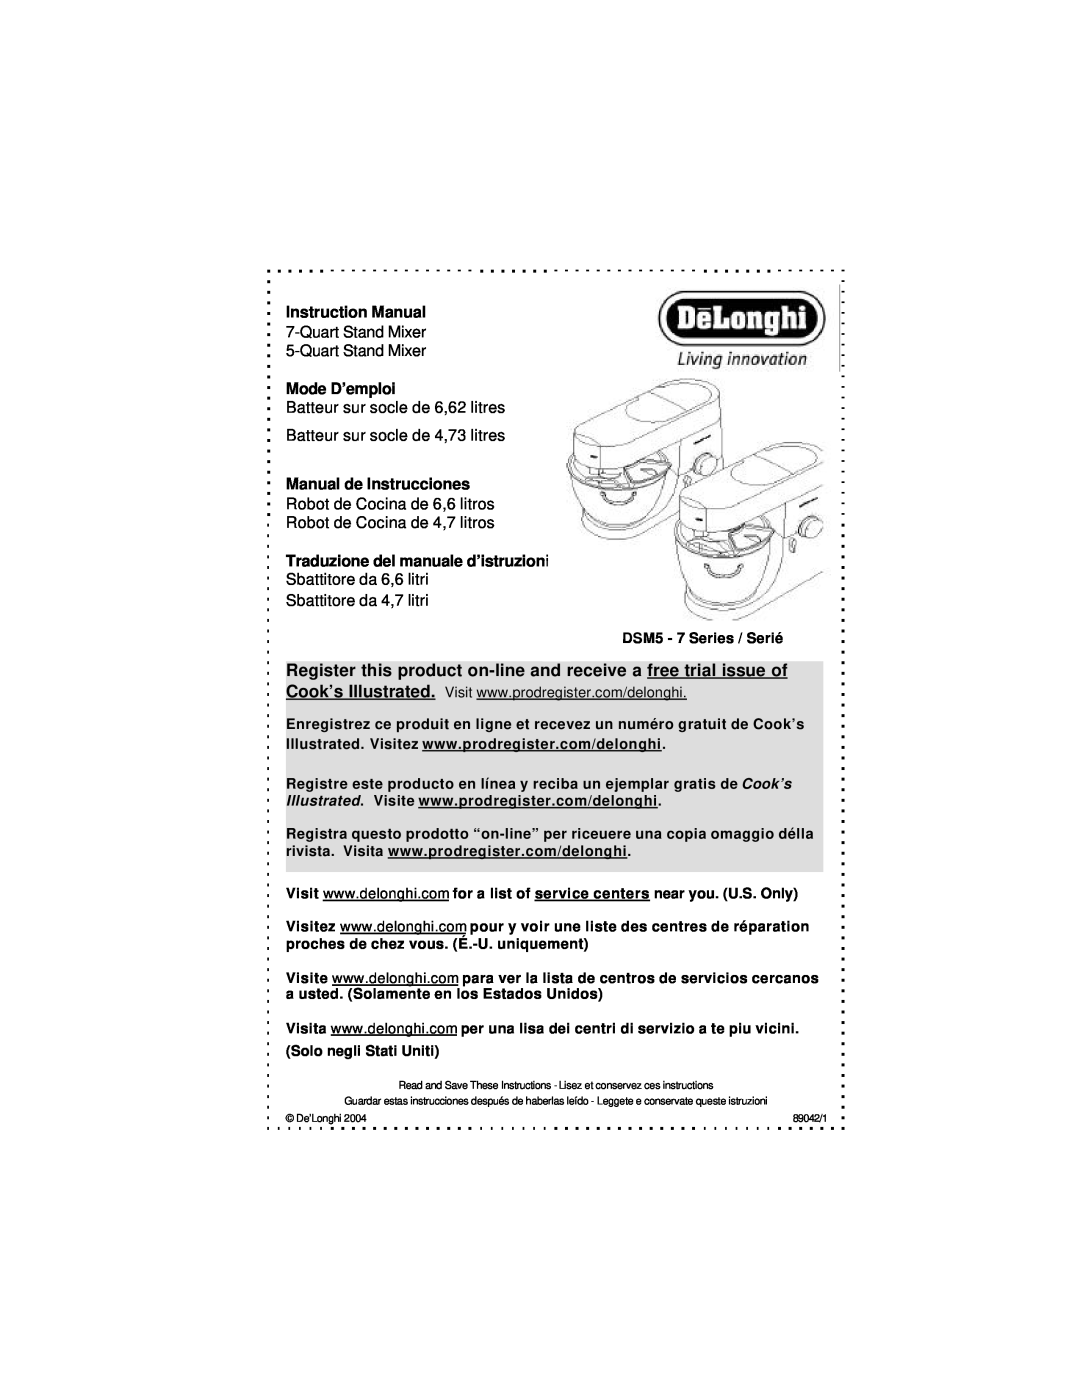 DeLonghi DSM5 - 7 Series instruction manual Instruction Manual, QuartStand Mixer 5-QuartStand Mixer, Mode D’emploi 